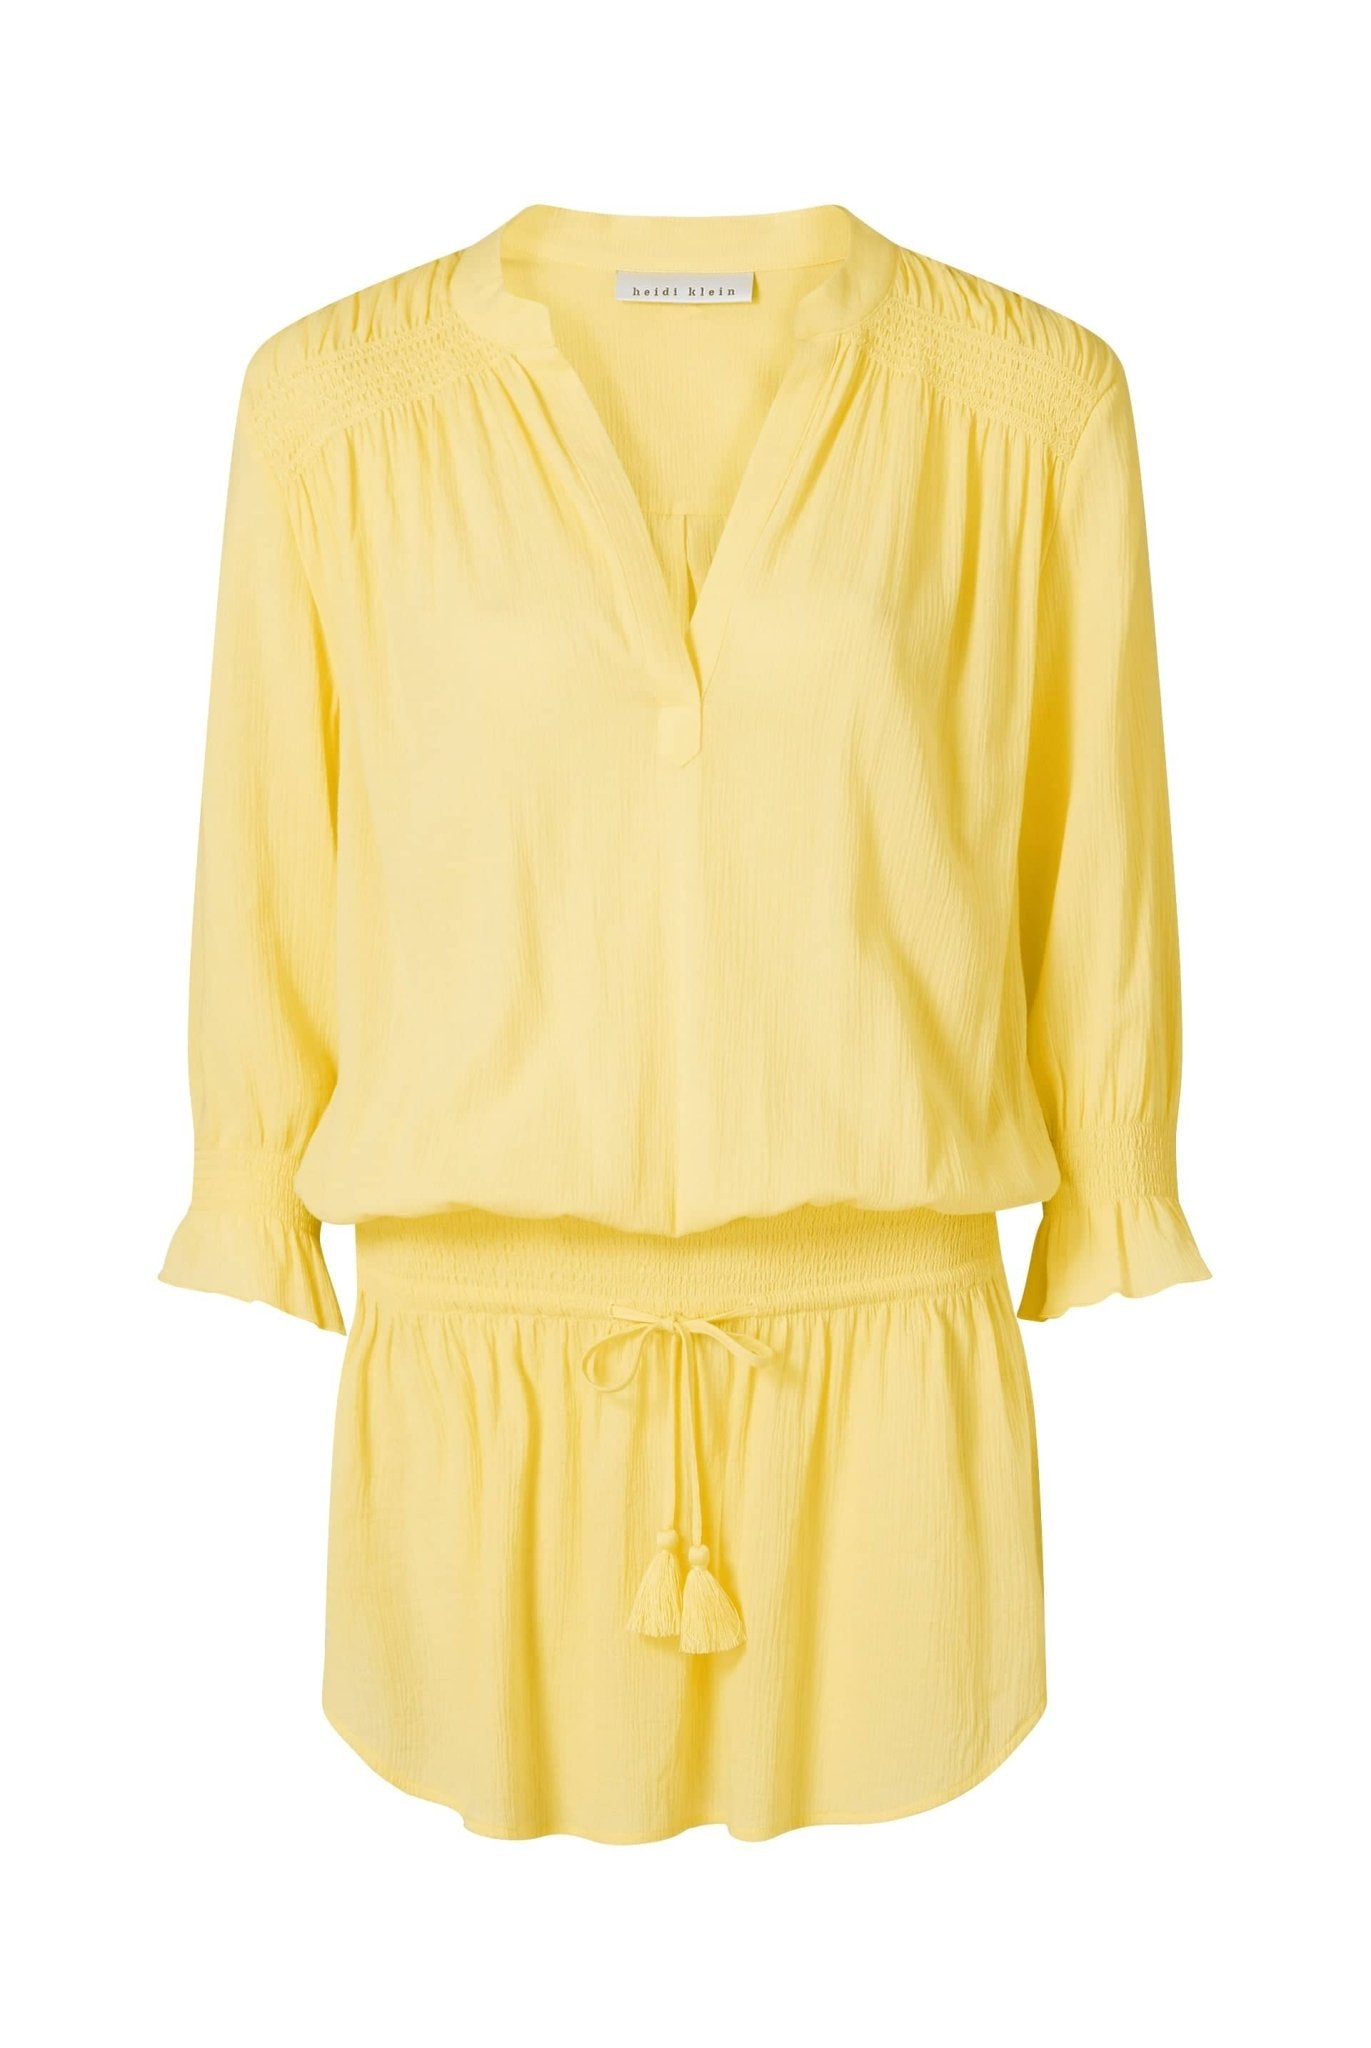 Clifton Beach Smocked Tunic In Yellow - Heidi Klein - UK Store